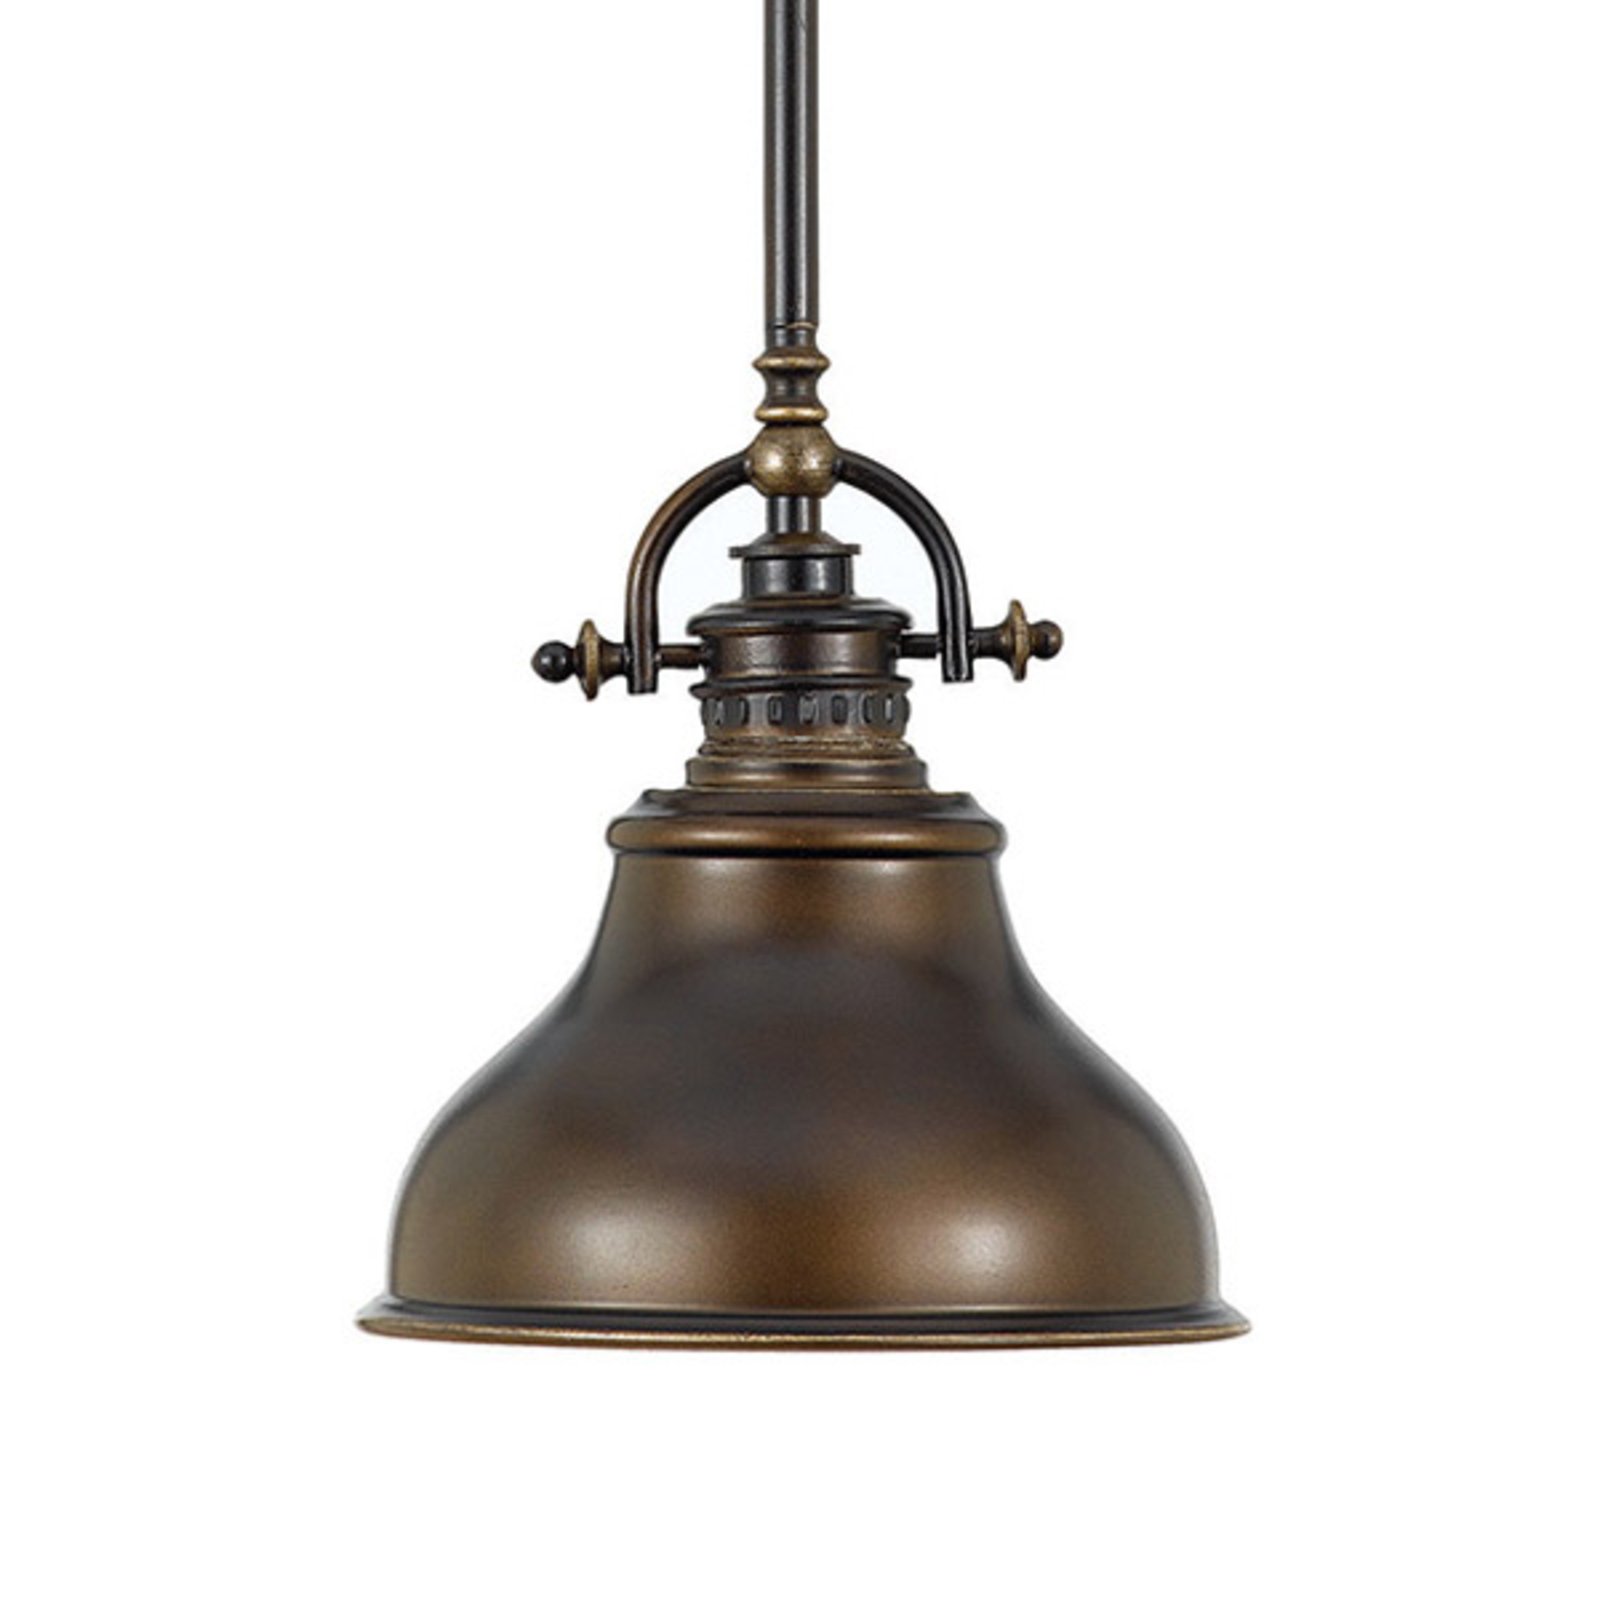 Perceptie terugtrekken Voeding Hanglamp Emery in industriële stijl brons Ø 20,3cm | Lampen24.nl